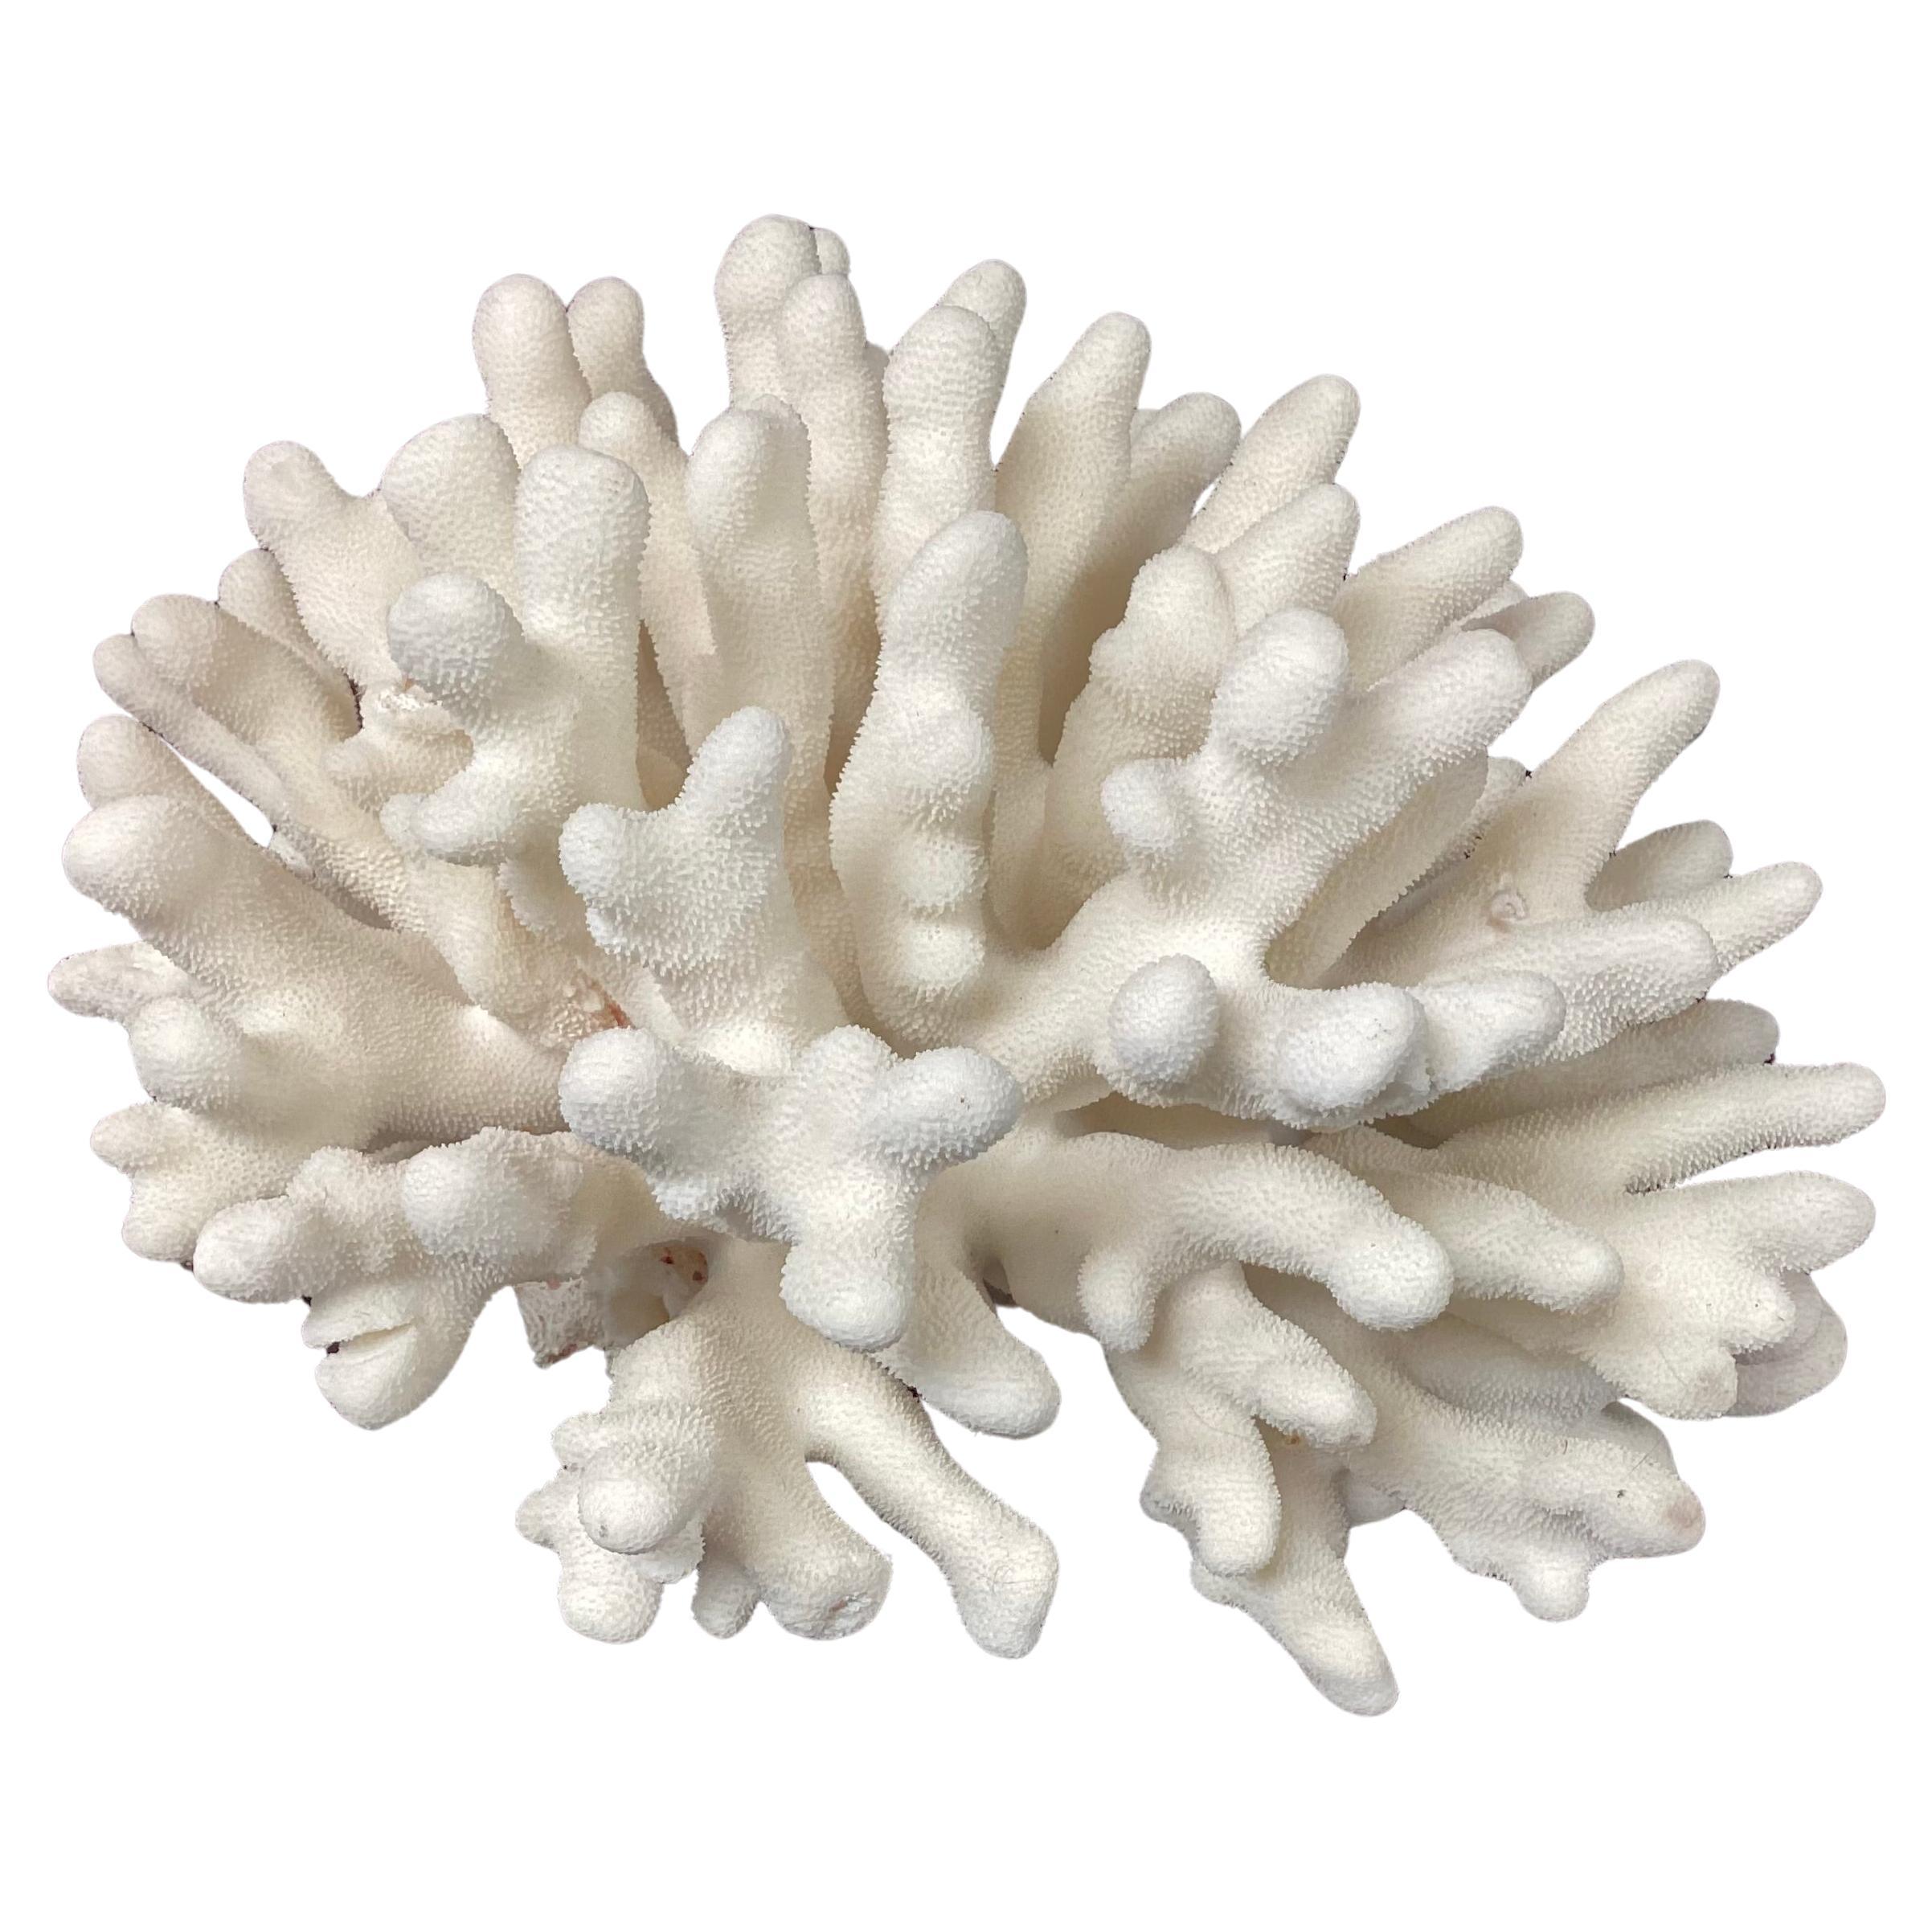 Natural White Elkhorn Coral Reef Specimen For Sale